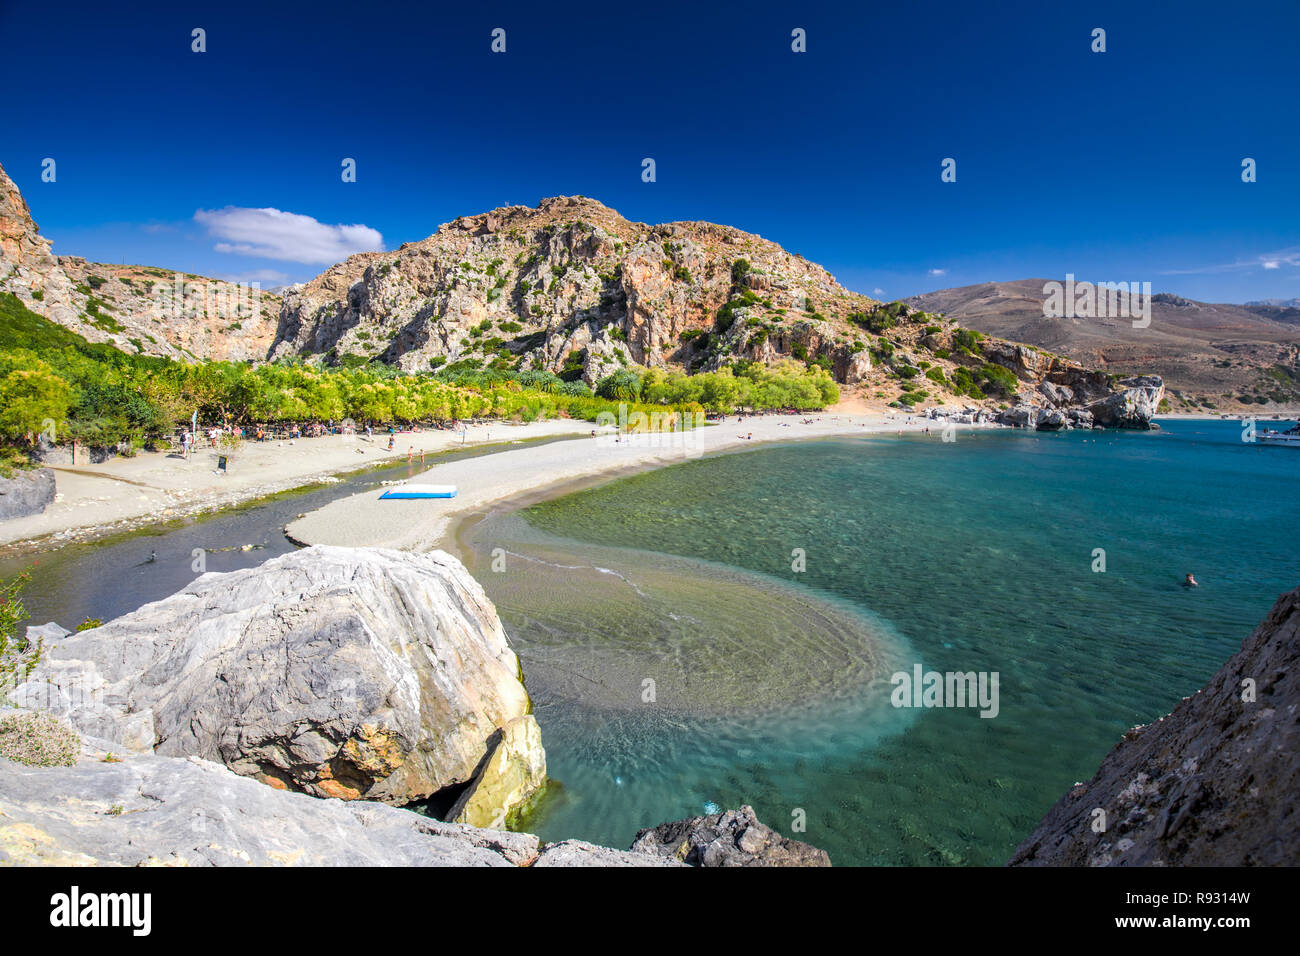 Preveli beach sull'isola di Creta con azure acqua chiara, la Grecia, l'Europa. Creta è la più grande e la più popolata delle isole greche. Foto Stock